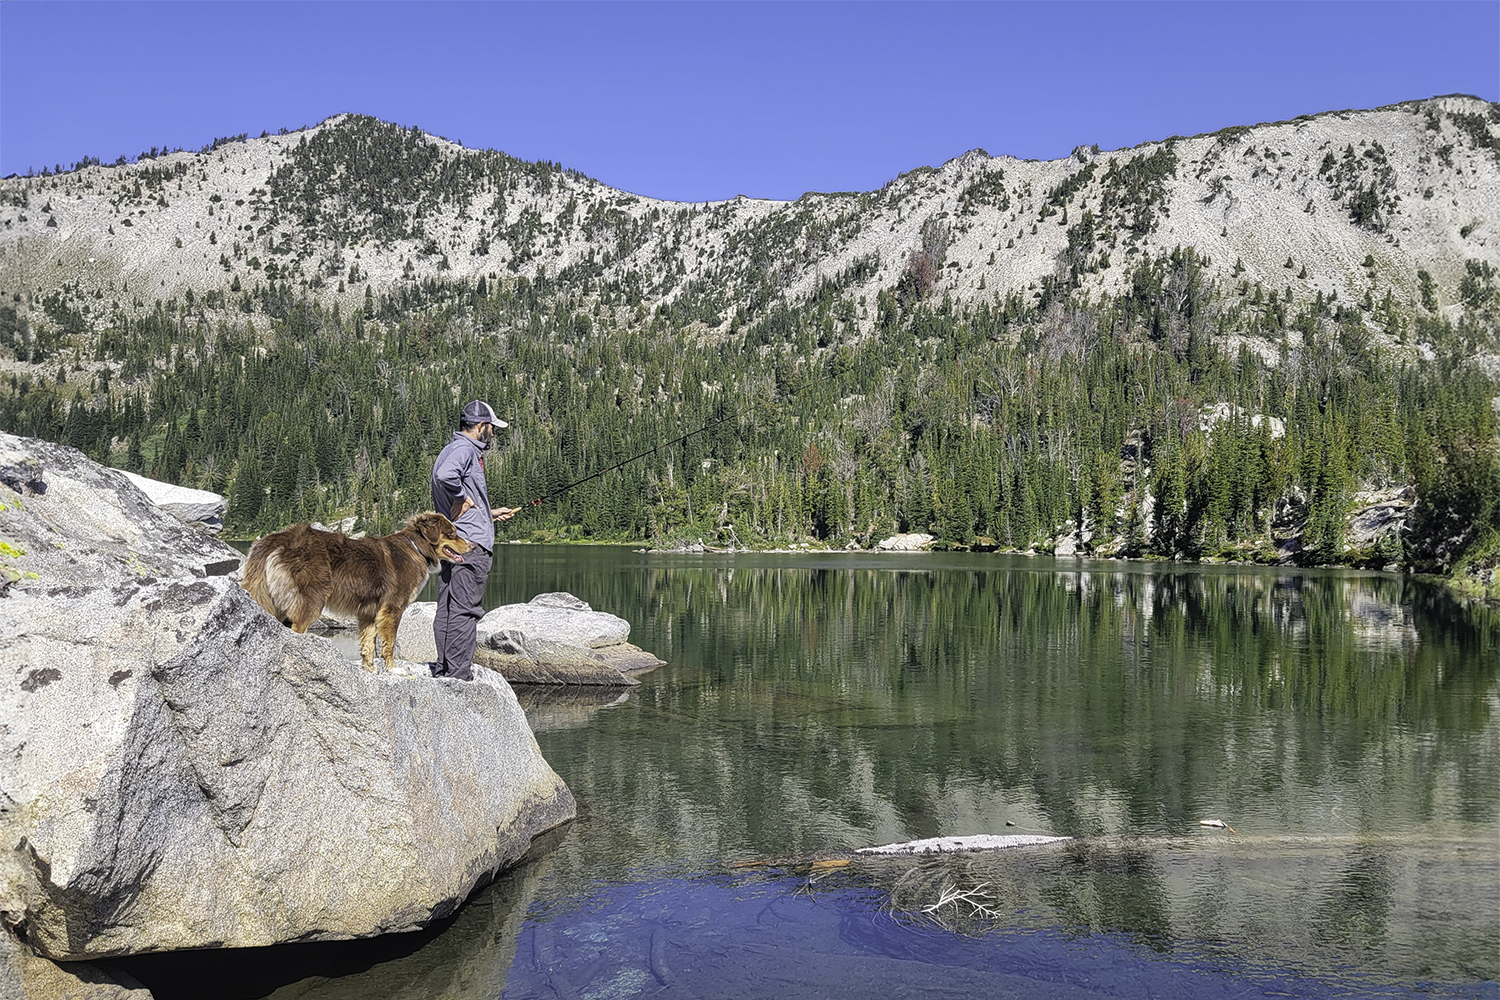 A backpacker wearing the Columbia Silver Ridge Lite sun shirt fishing in an alpine lake